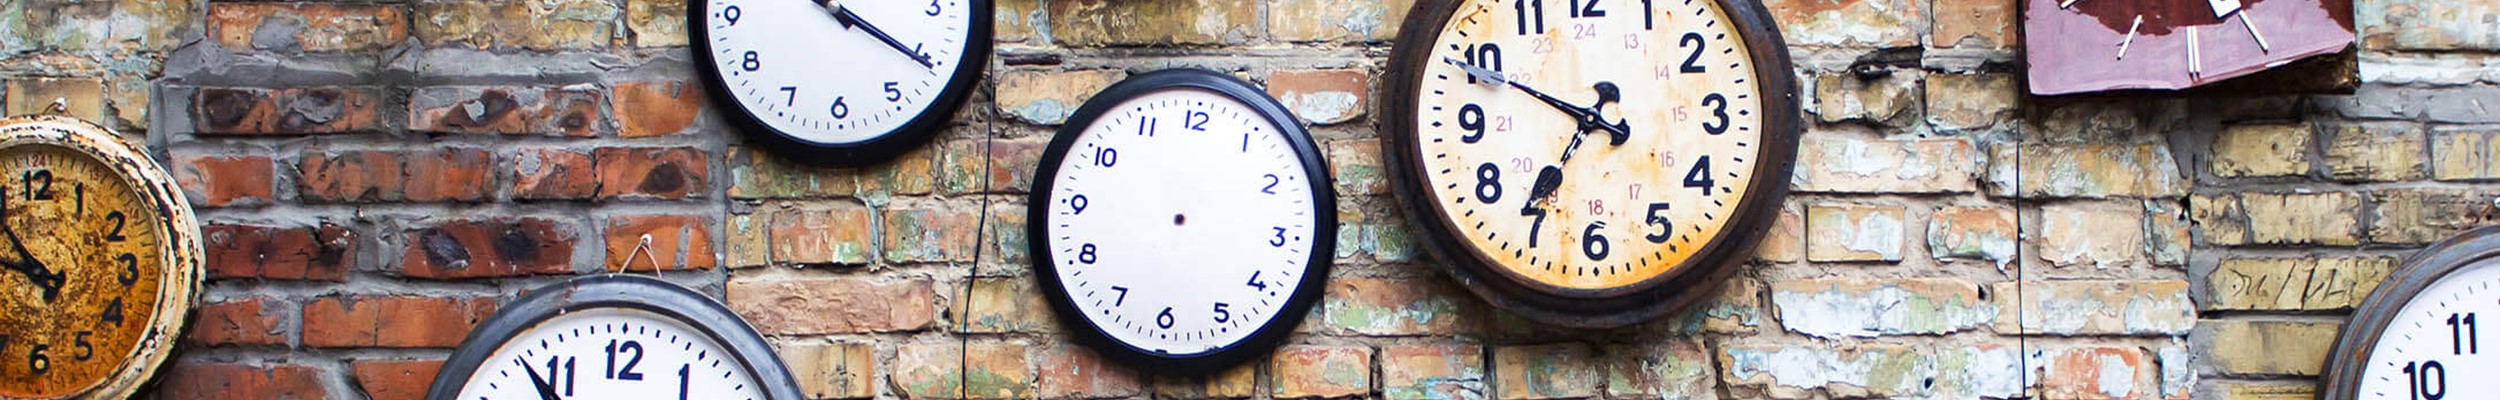 Lots of clocks on a brick wall